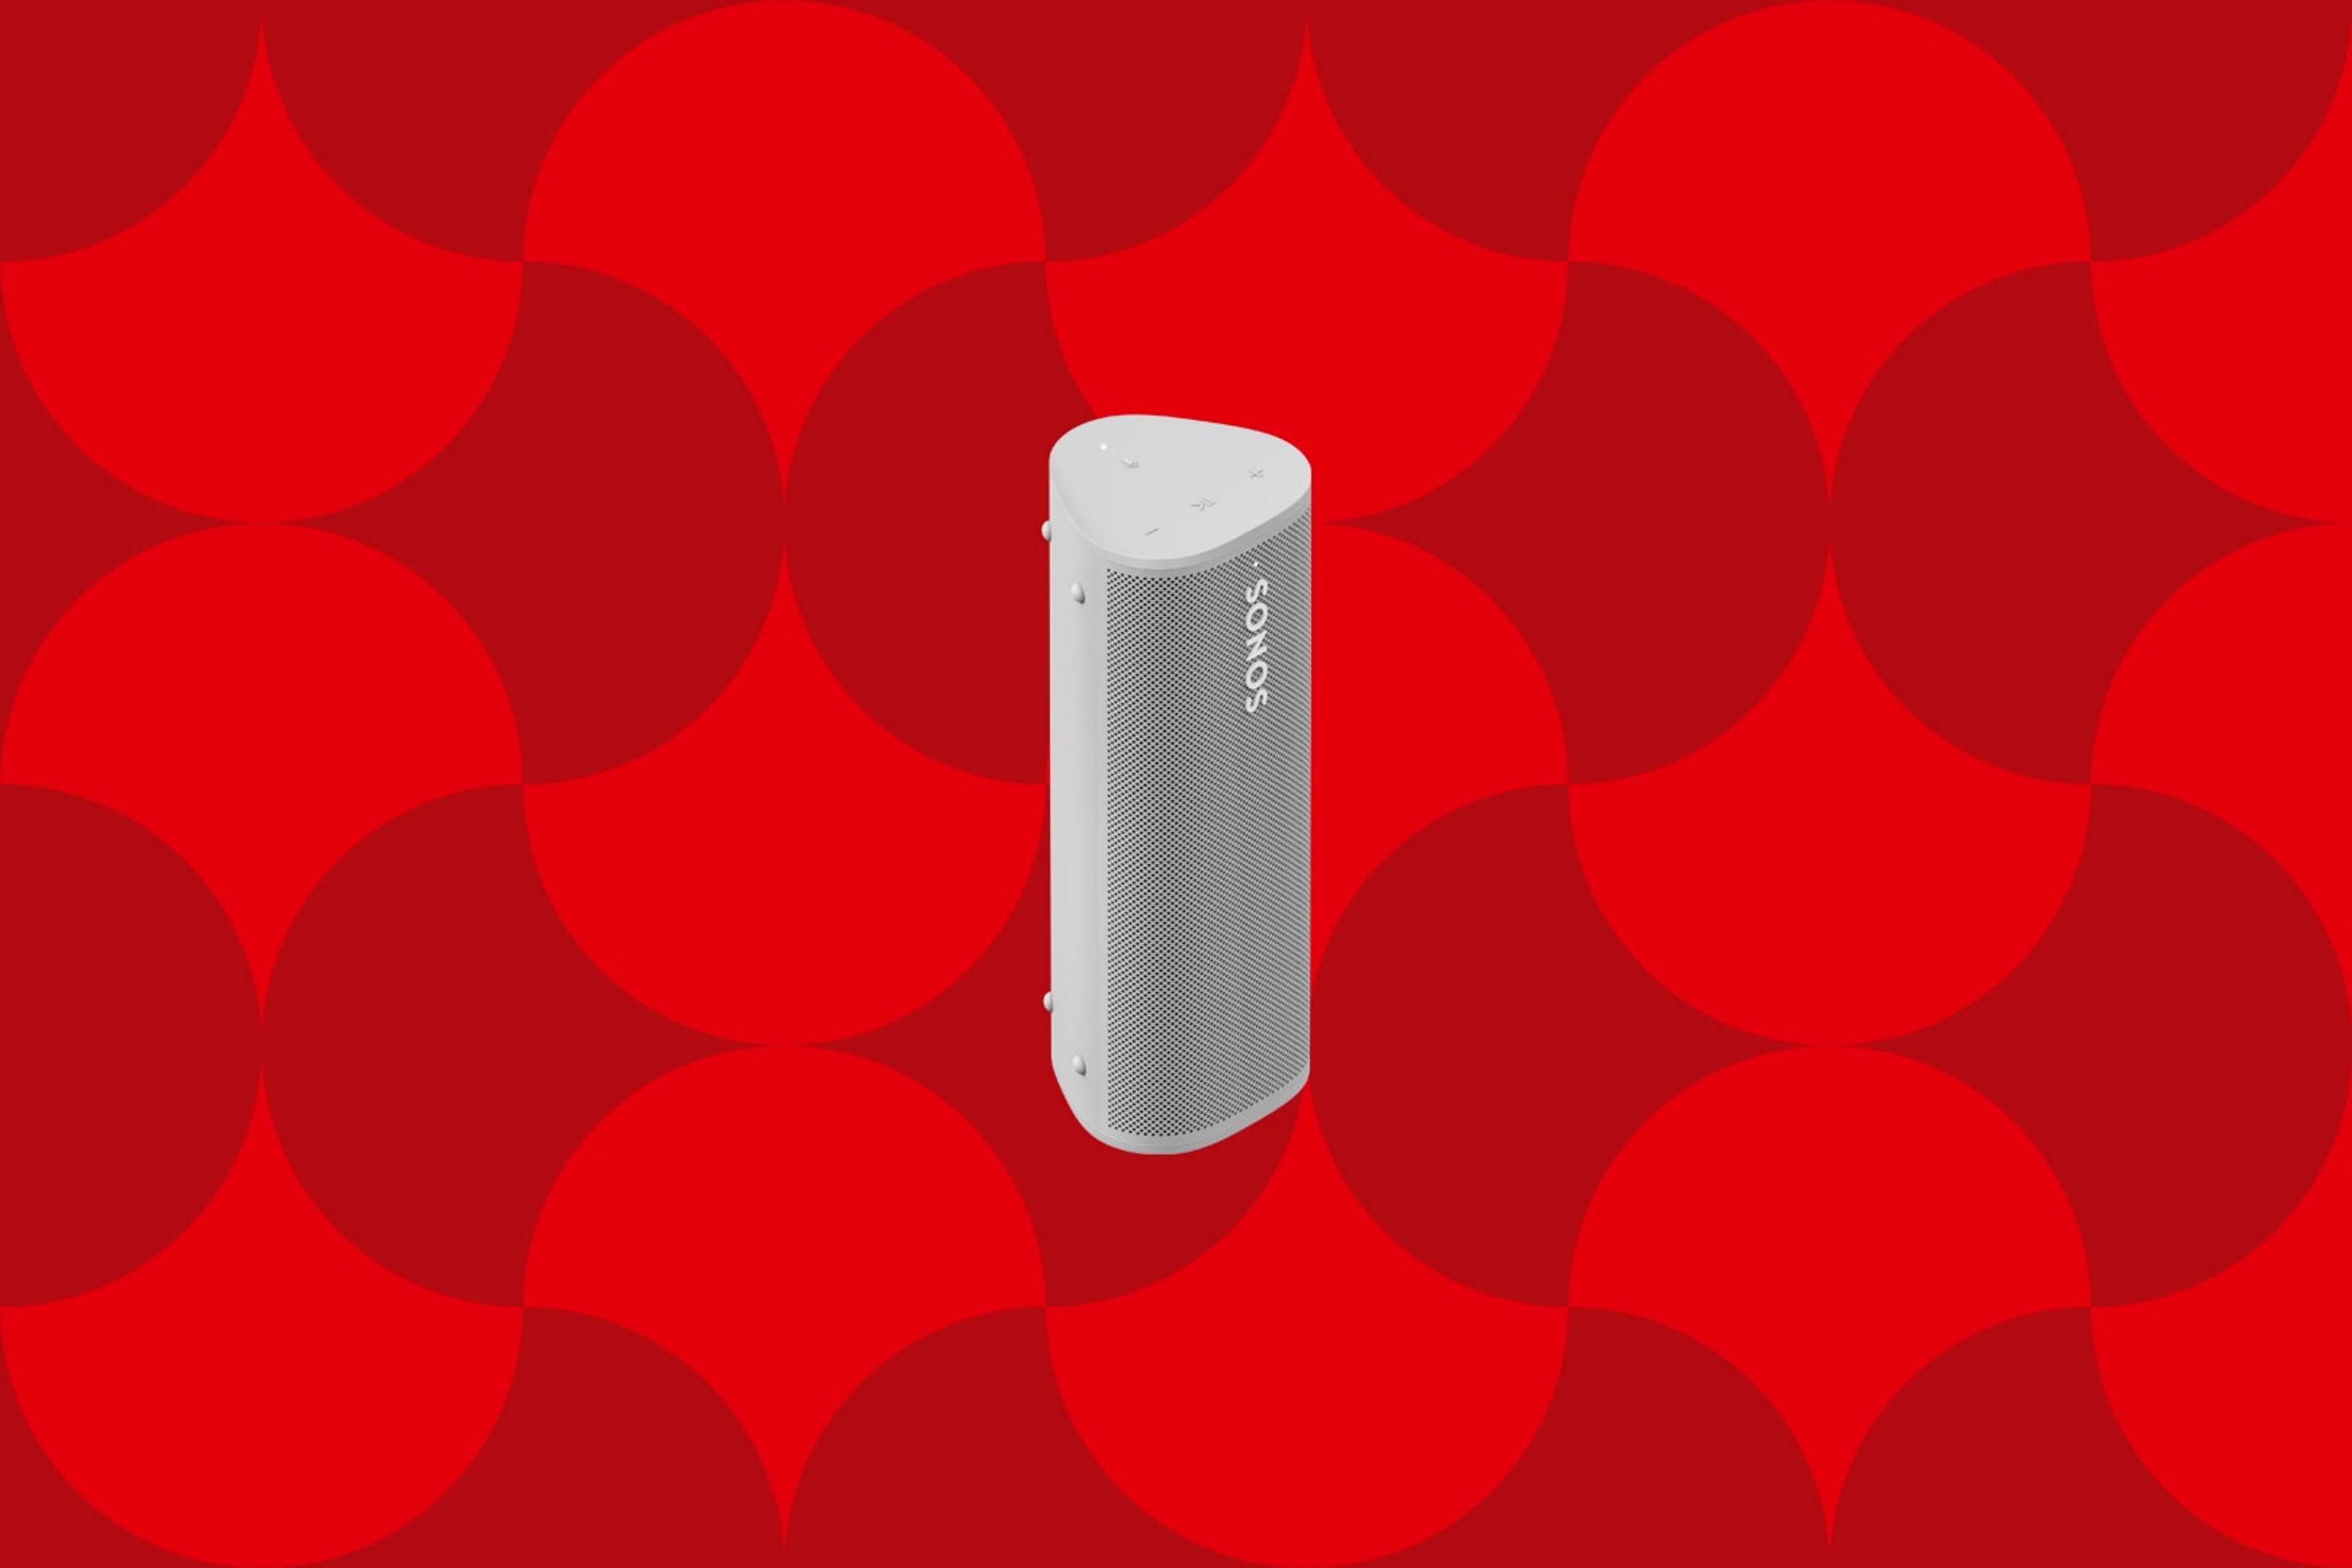 Bilde av en hvit Sonos Roam bærbar høyttaler på en rød grafisk julebakgrunn